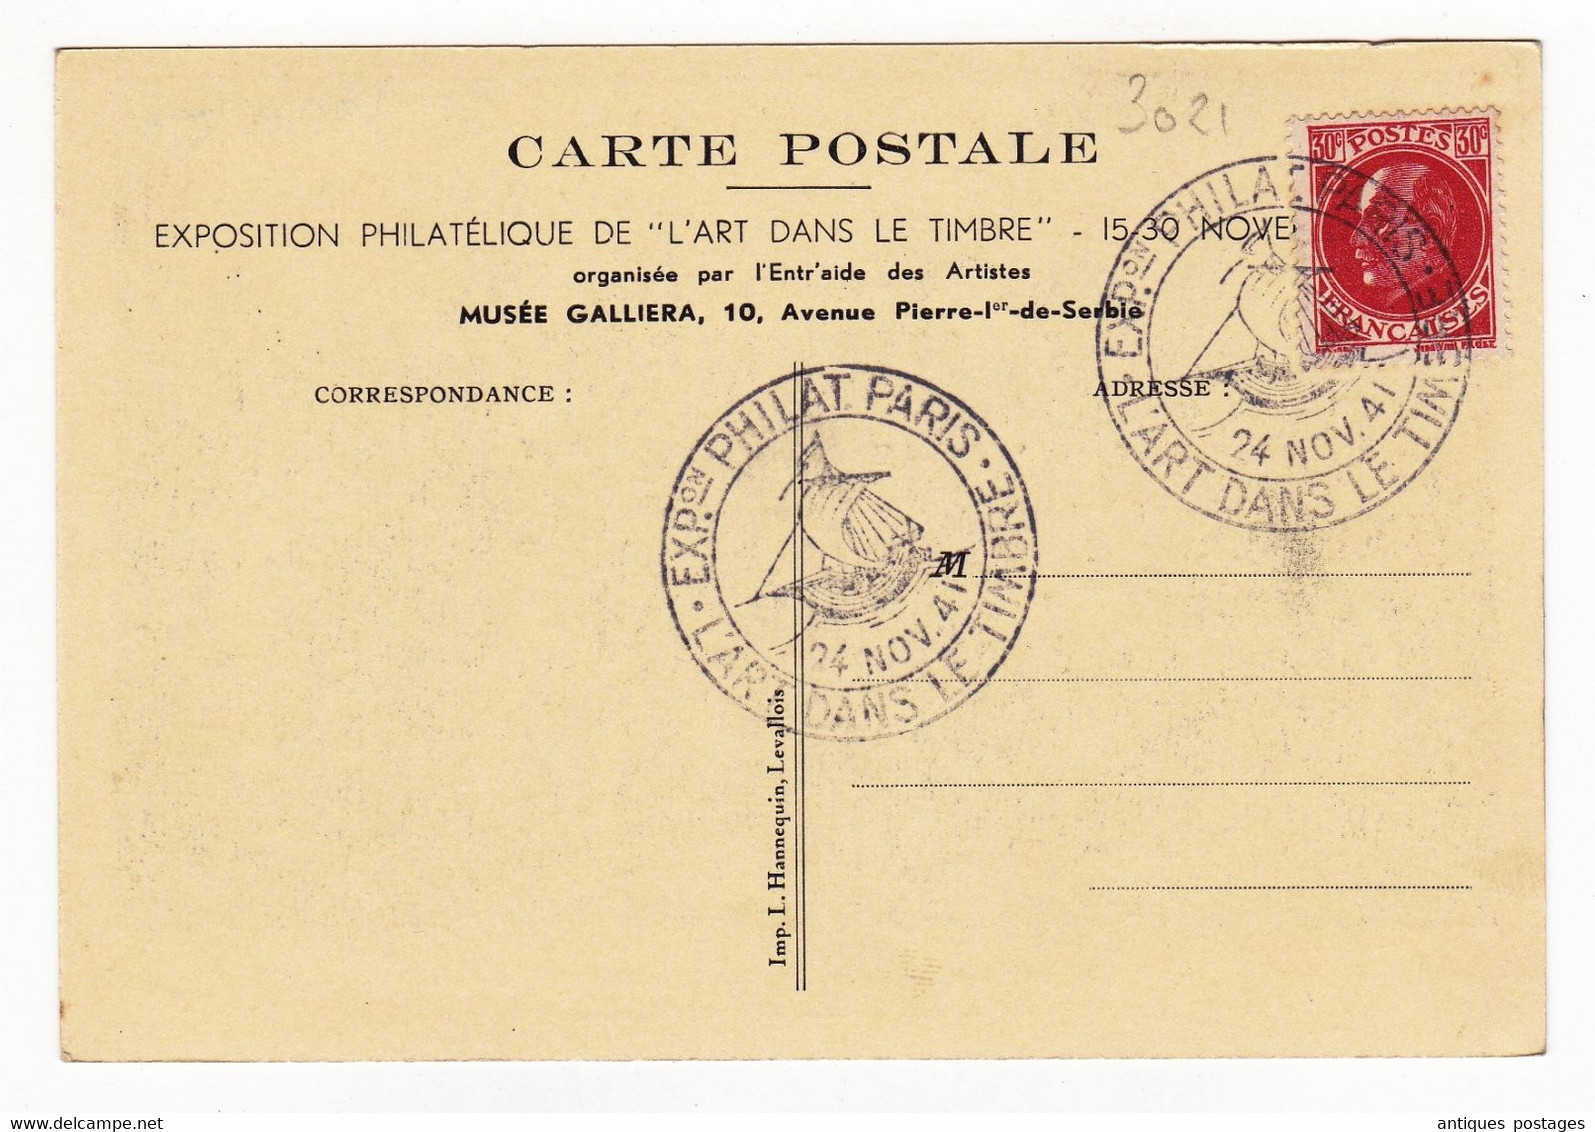 Exposition Philatélique De Paris 24 Novembre 1941 Pétain La Bourse Aux Timbres En 1860 Stamp Exchange - 1941-42 Pétain